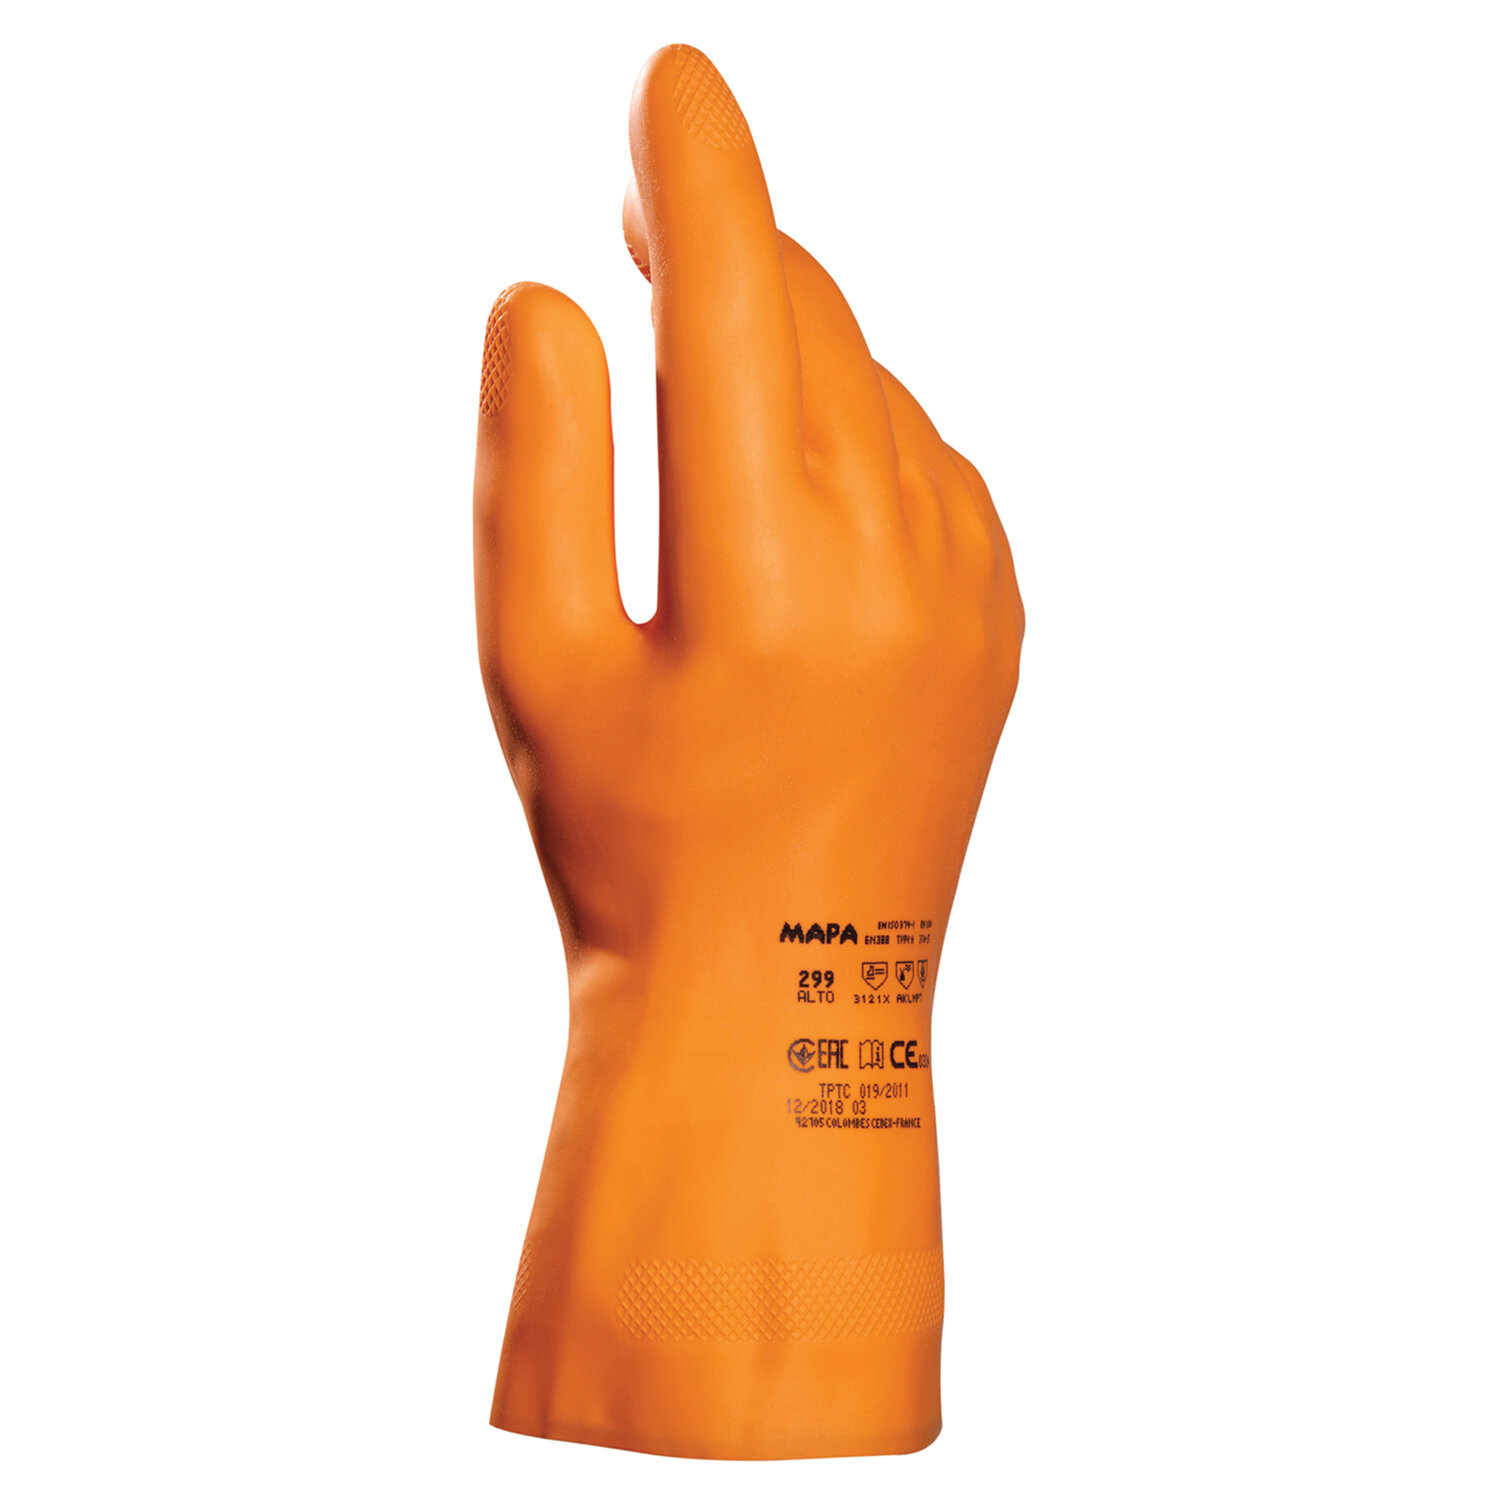 Перчатки хозяйственно-бытовые латексные, с х/б напылением, от химических воздействий, XL/10, оранжевый, MAPA (Alto 299)